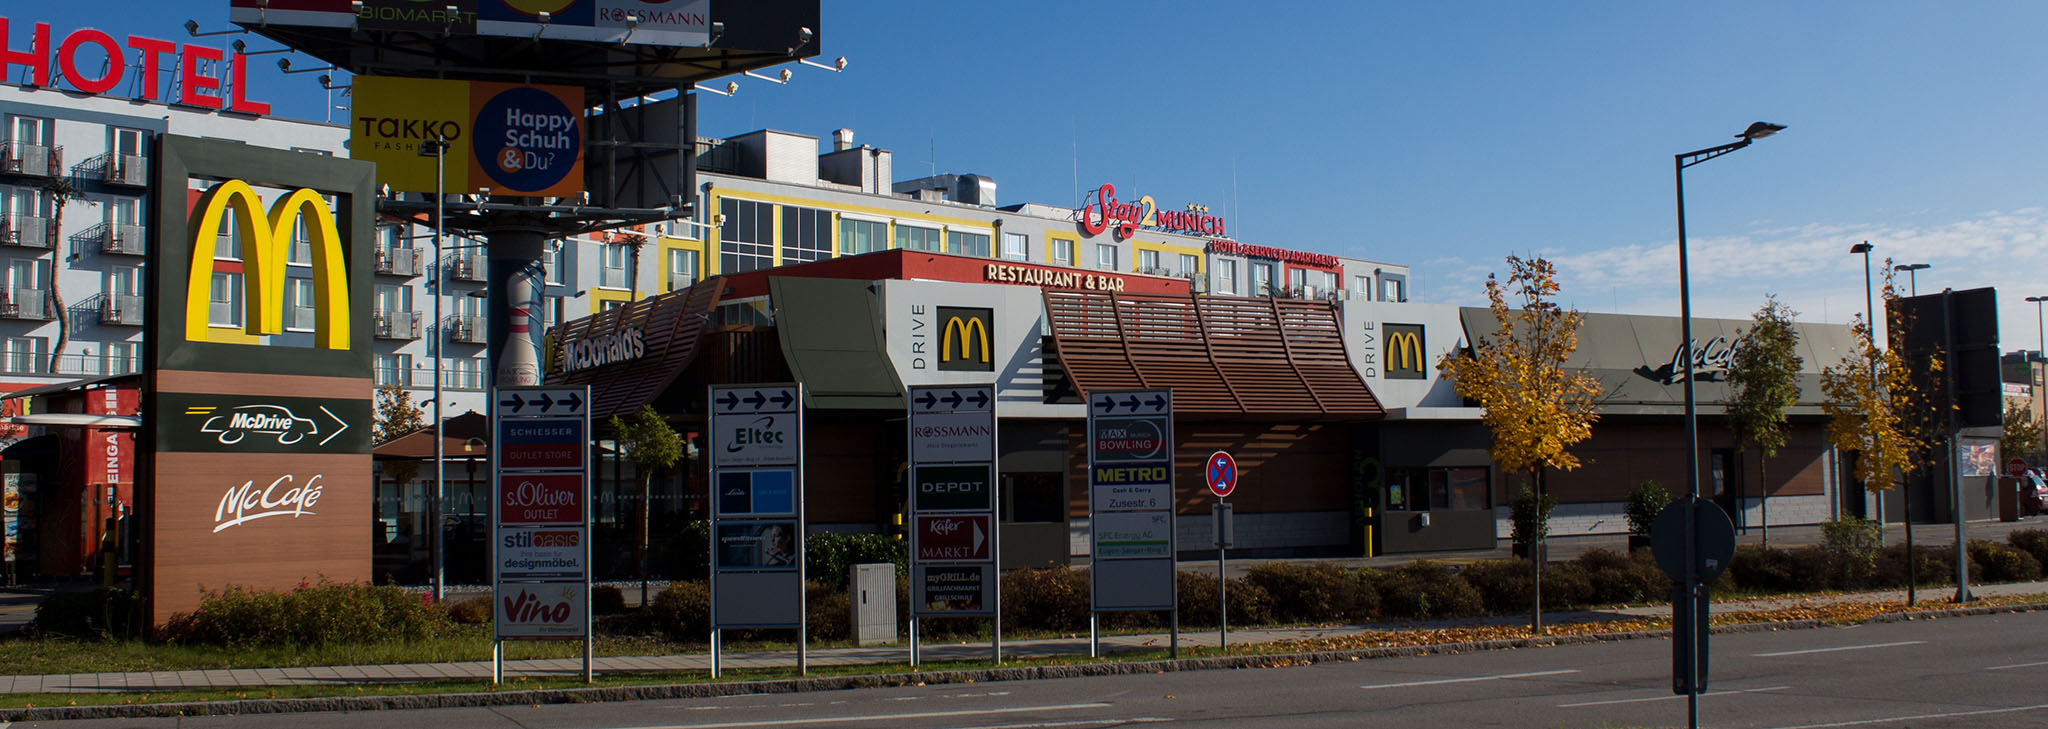 Das McDonald’s-Restaurant in Brunnthal